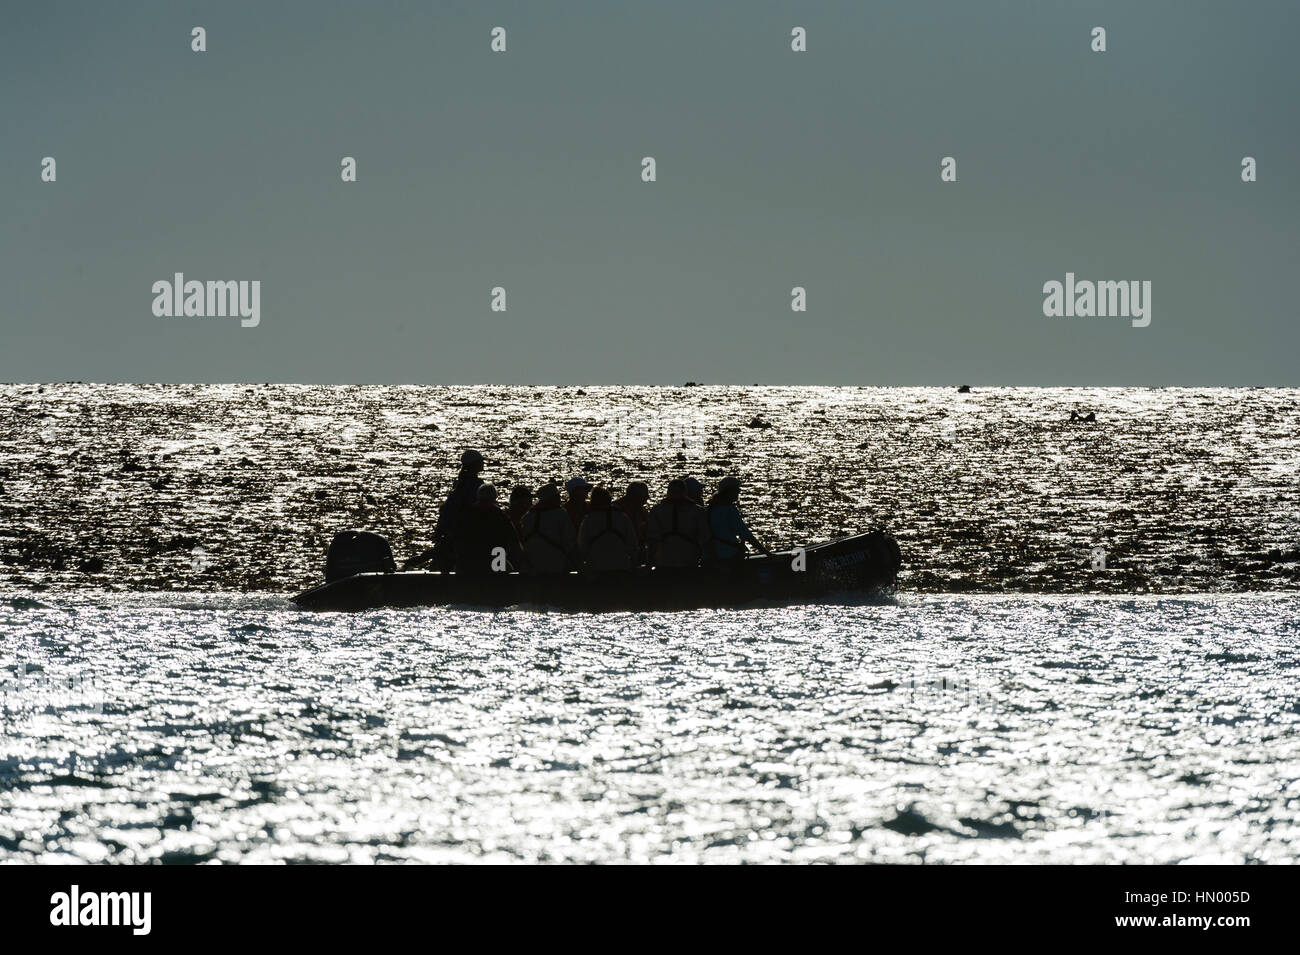 La silhouette di un gommone zodiac con i turisti ad esplorare un reef esposta con la bassa marea. Foto Stock